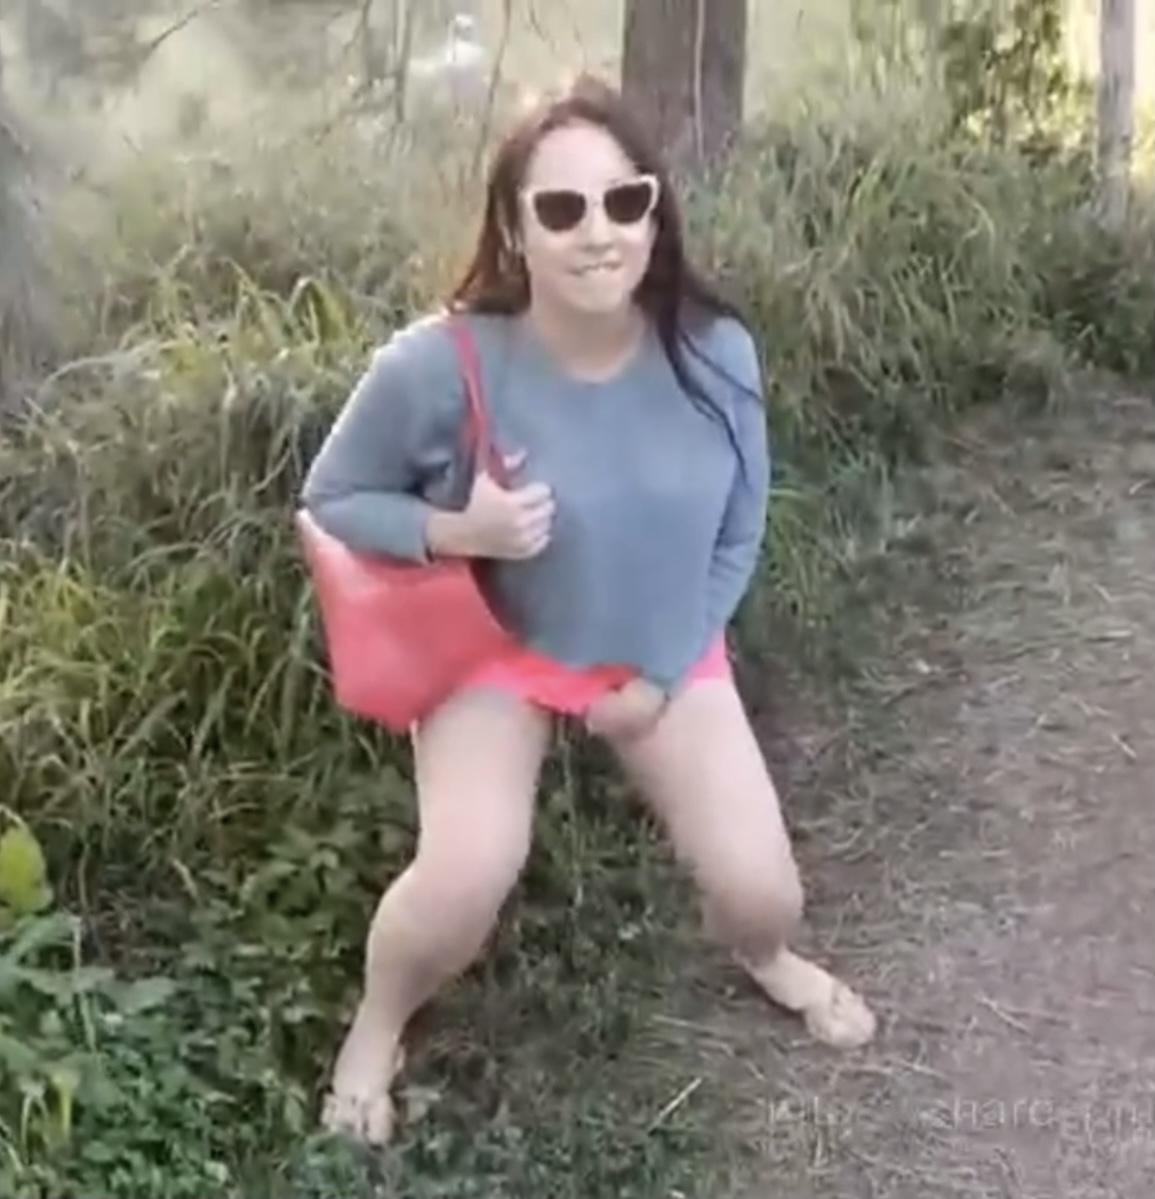 Woman takes a sneaky pee along the trail